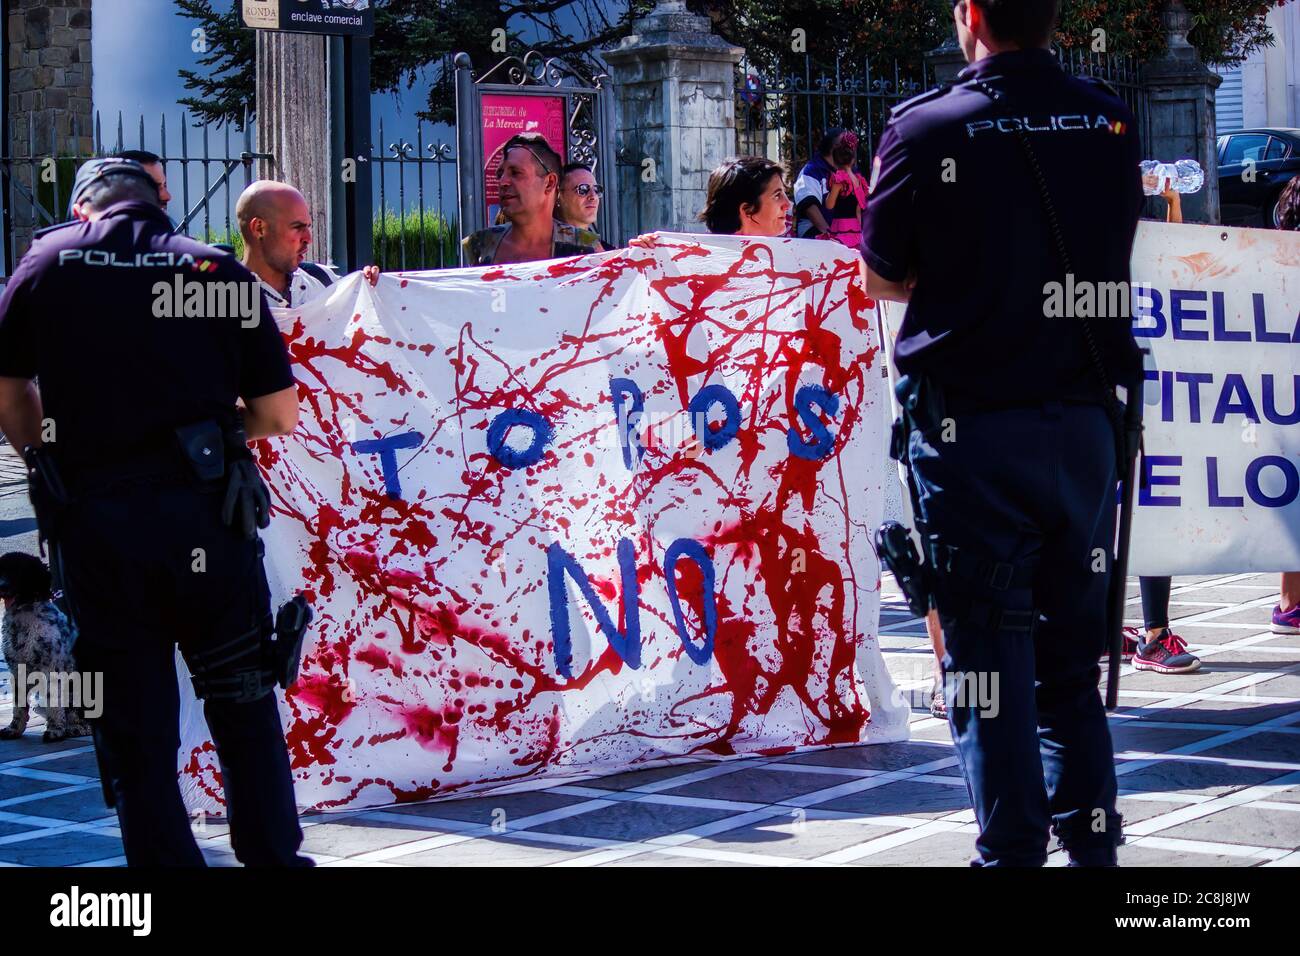 Ronda, Spagna - 06 settembre 2015: Una protesta contro la crudeltà animale durante la stagione di Feria. I manifestanti si oppongono al festival toro in Andalusia che contro Foto Stock